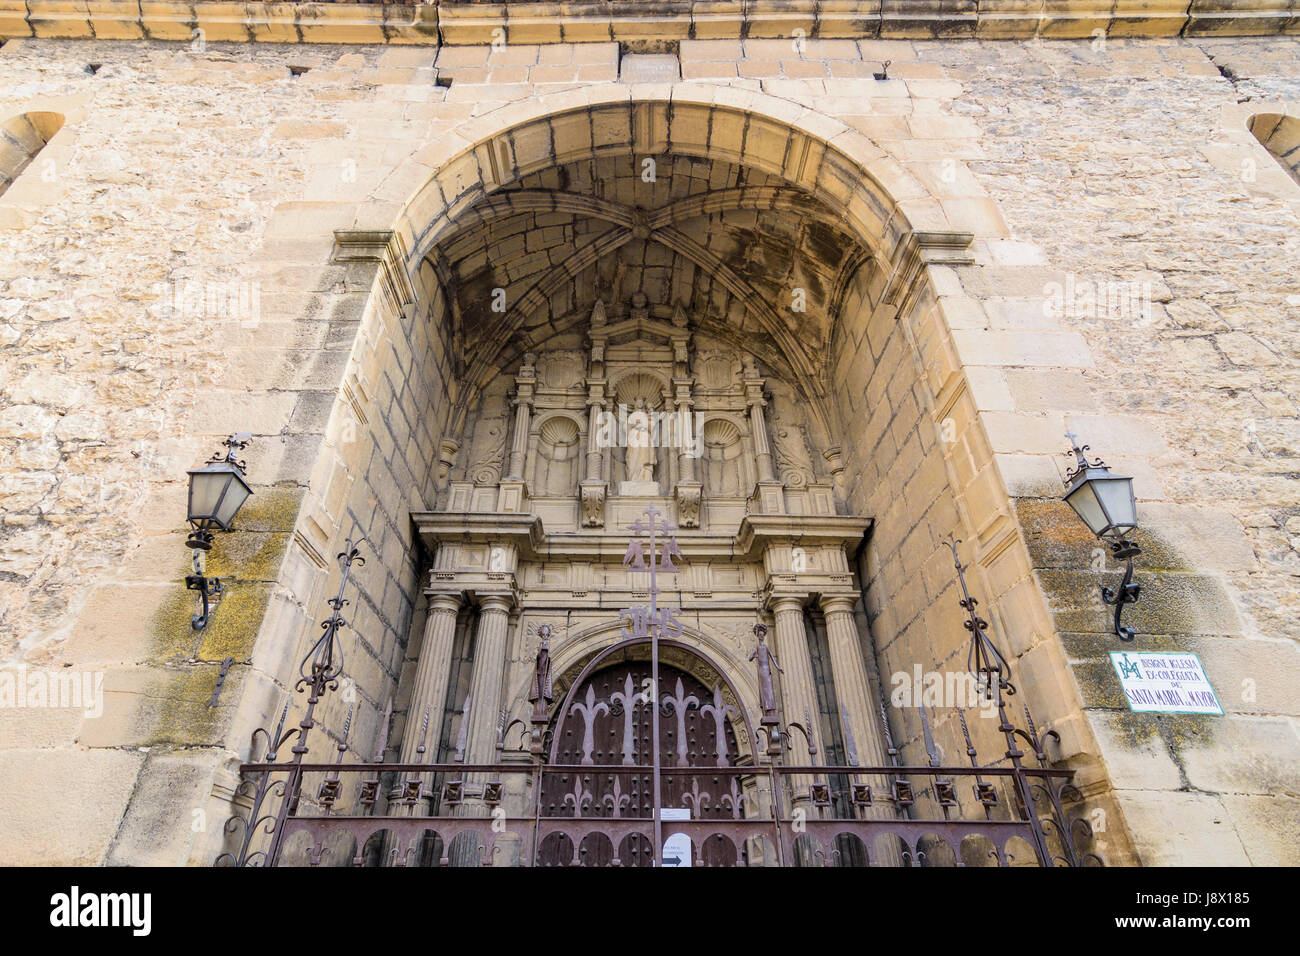 Entrance detail of the The 17th century former collegiate of Santa María la Mayor in the old town of Rubielos de Mora, Teruel, Aragon, Spain Stock Photo